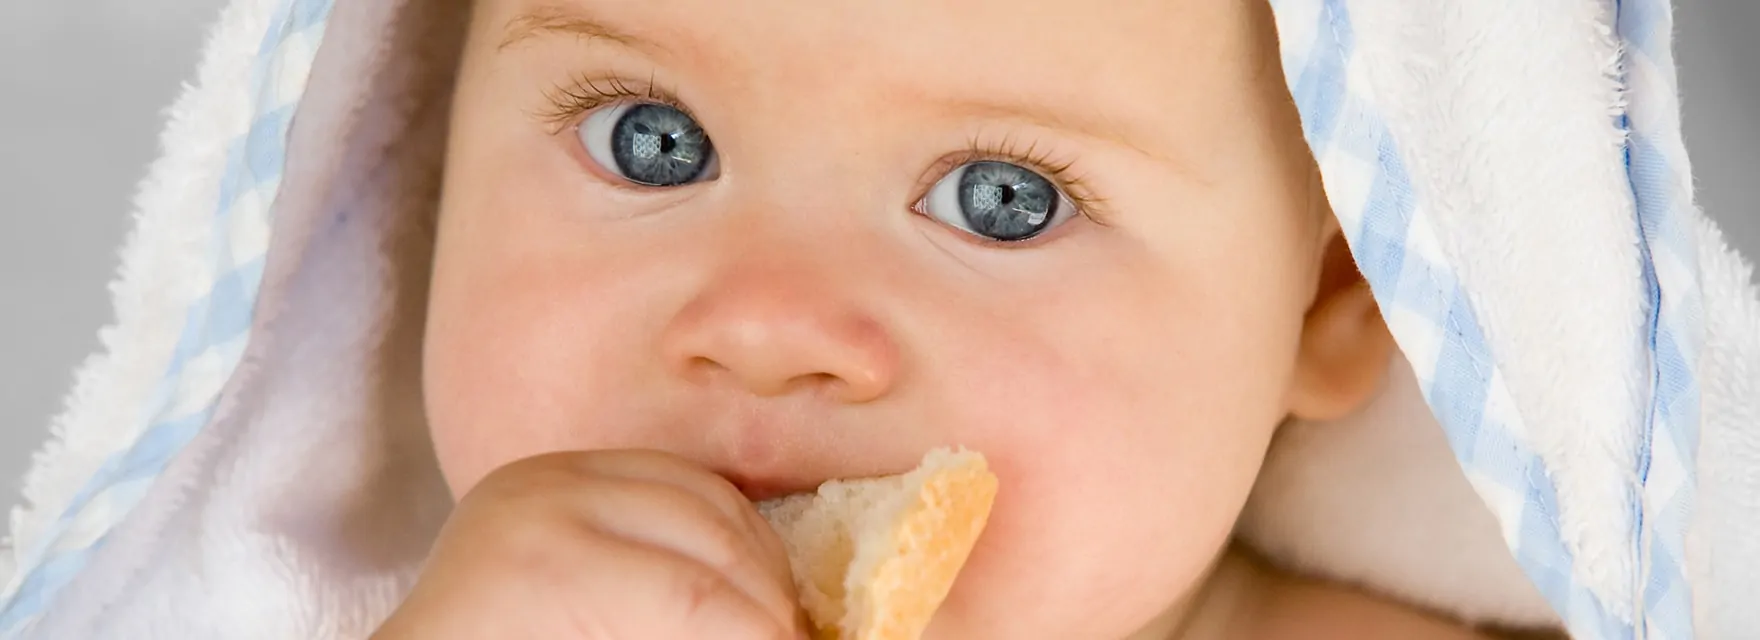 Broodbeleg voor baby’s. Een verantwoorde eerste boterham